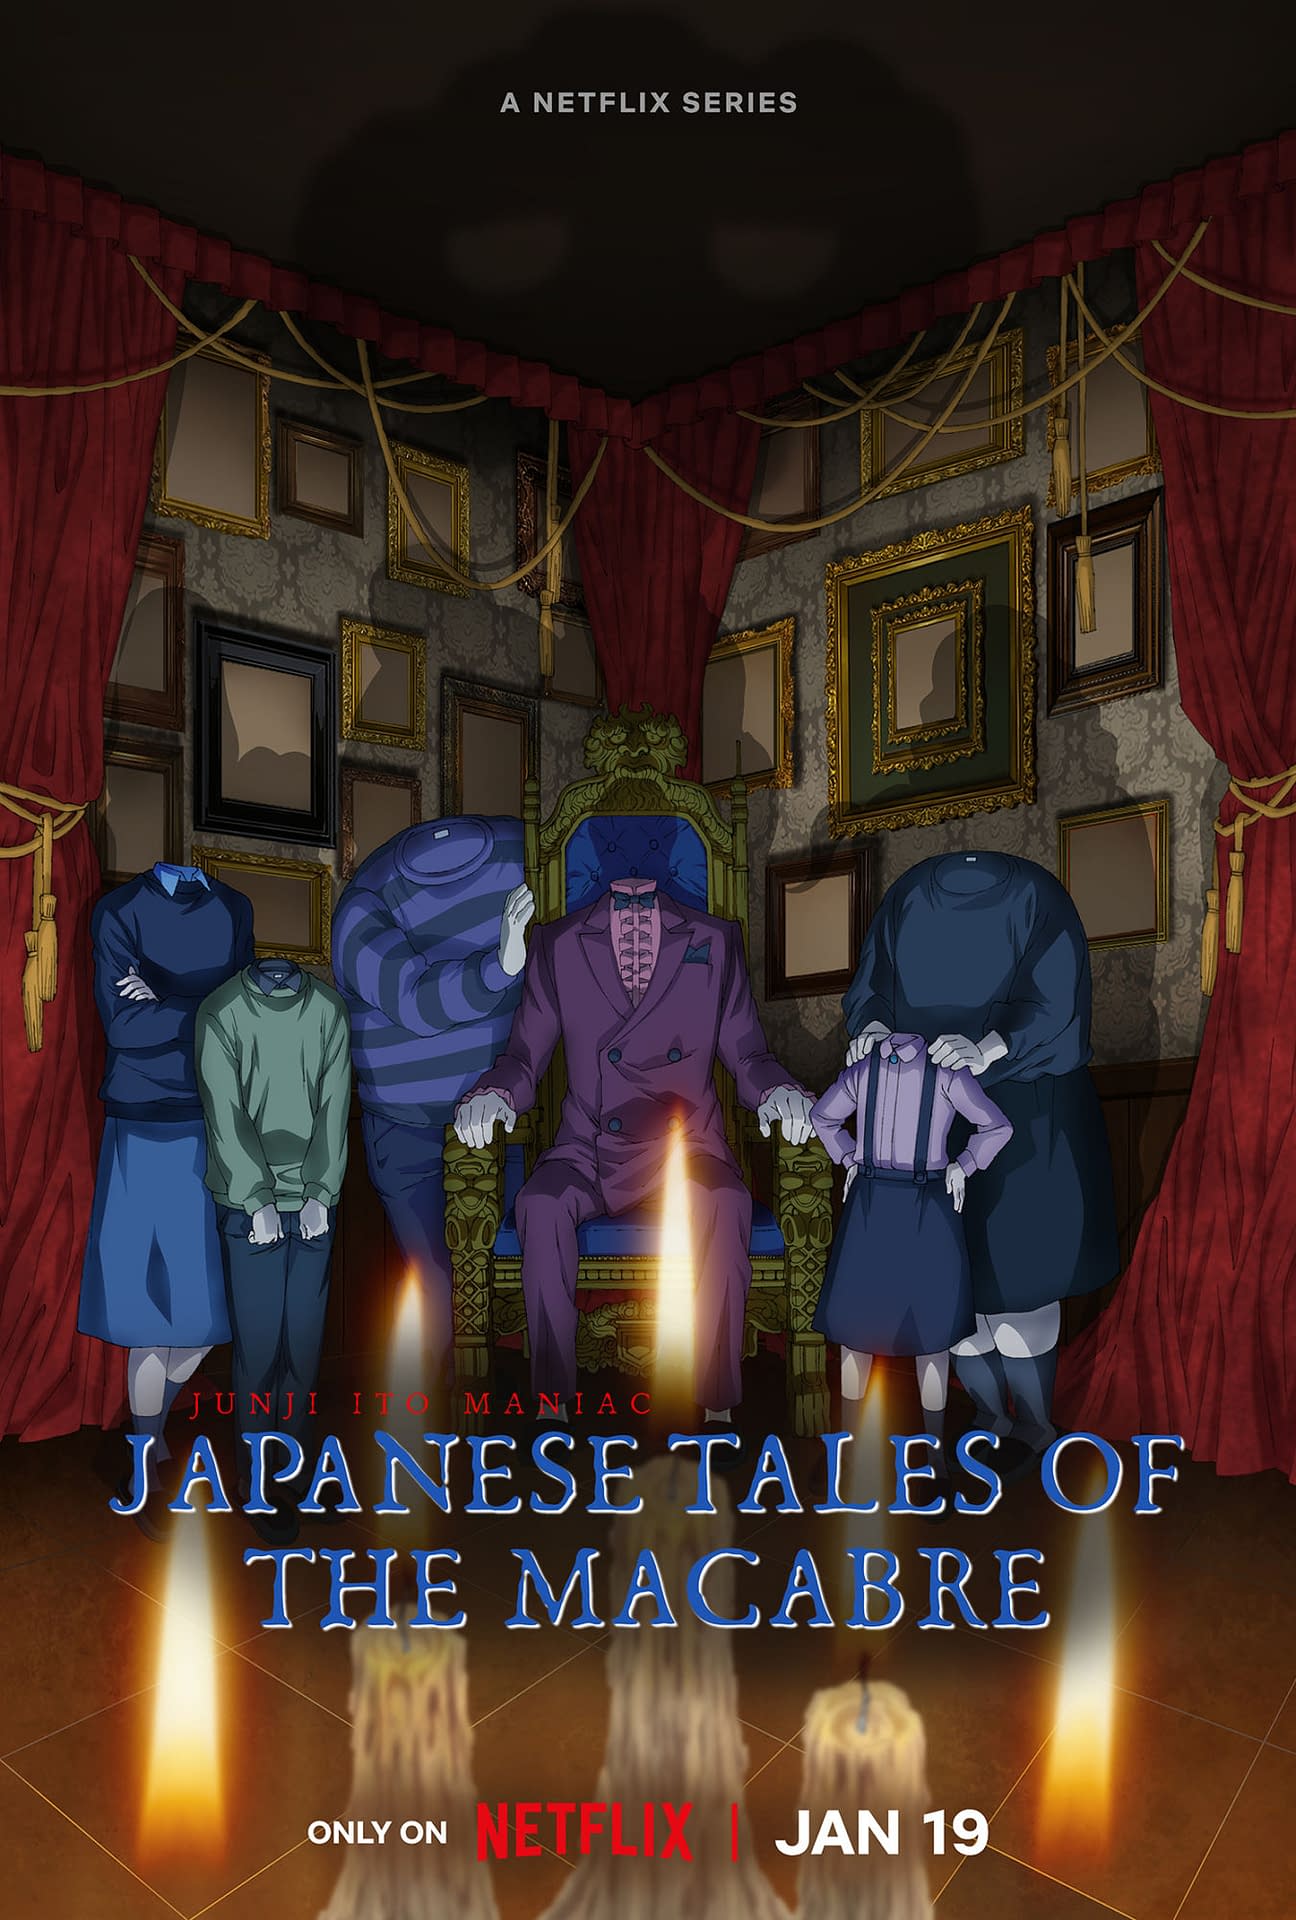 Junji Ito on Whispering Woman  Junji Ito Maniac: Japanese Tales